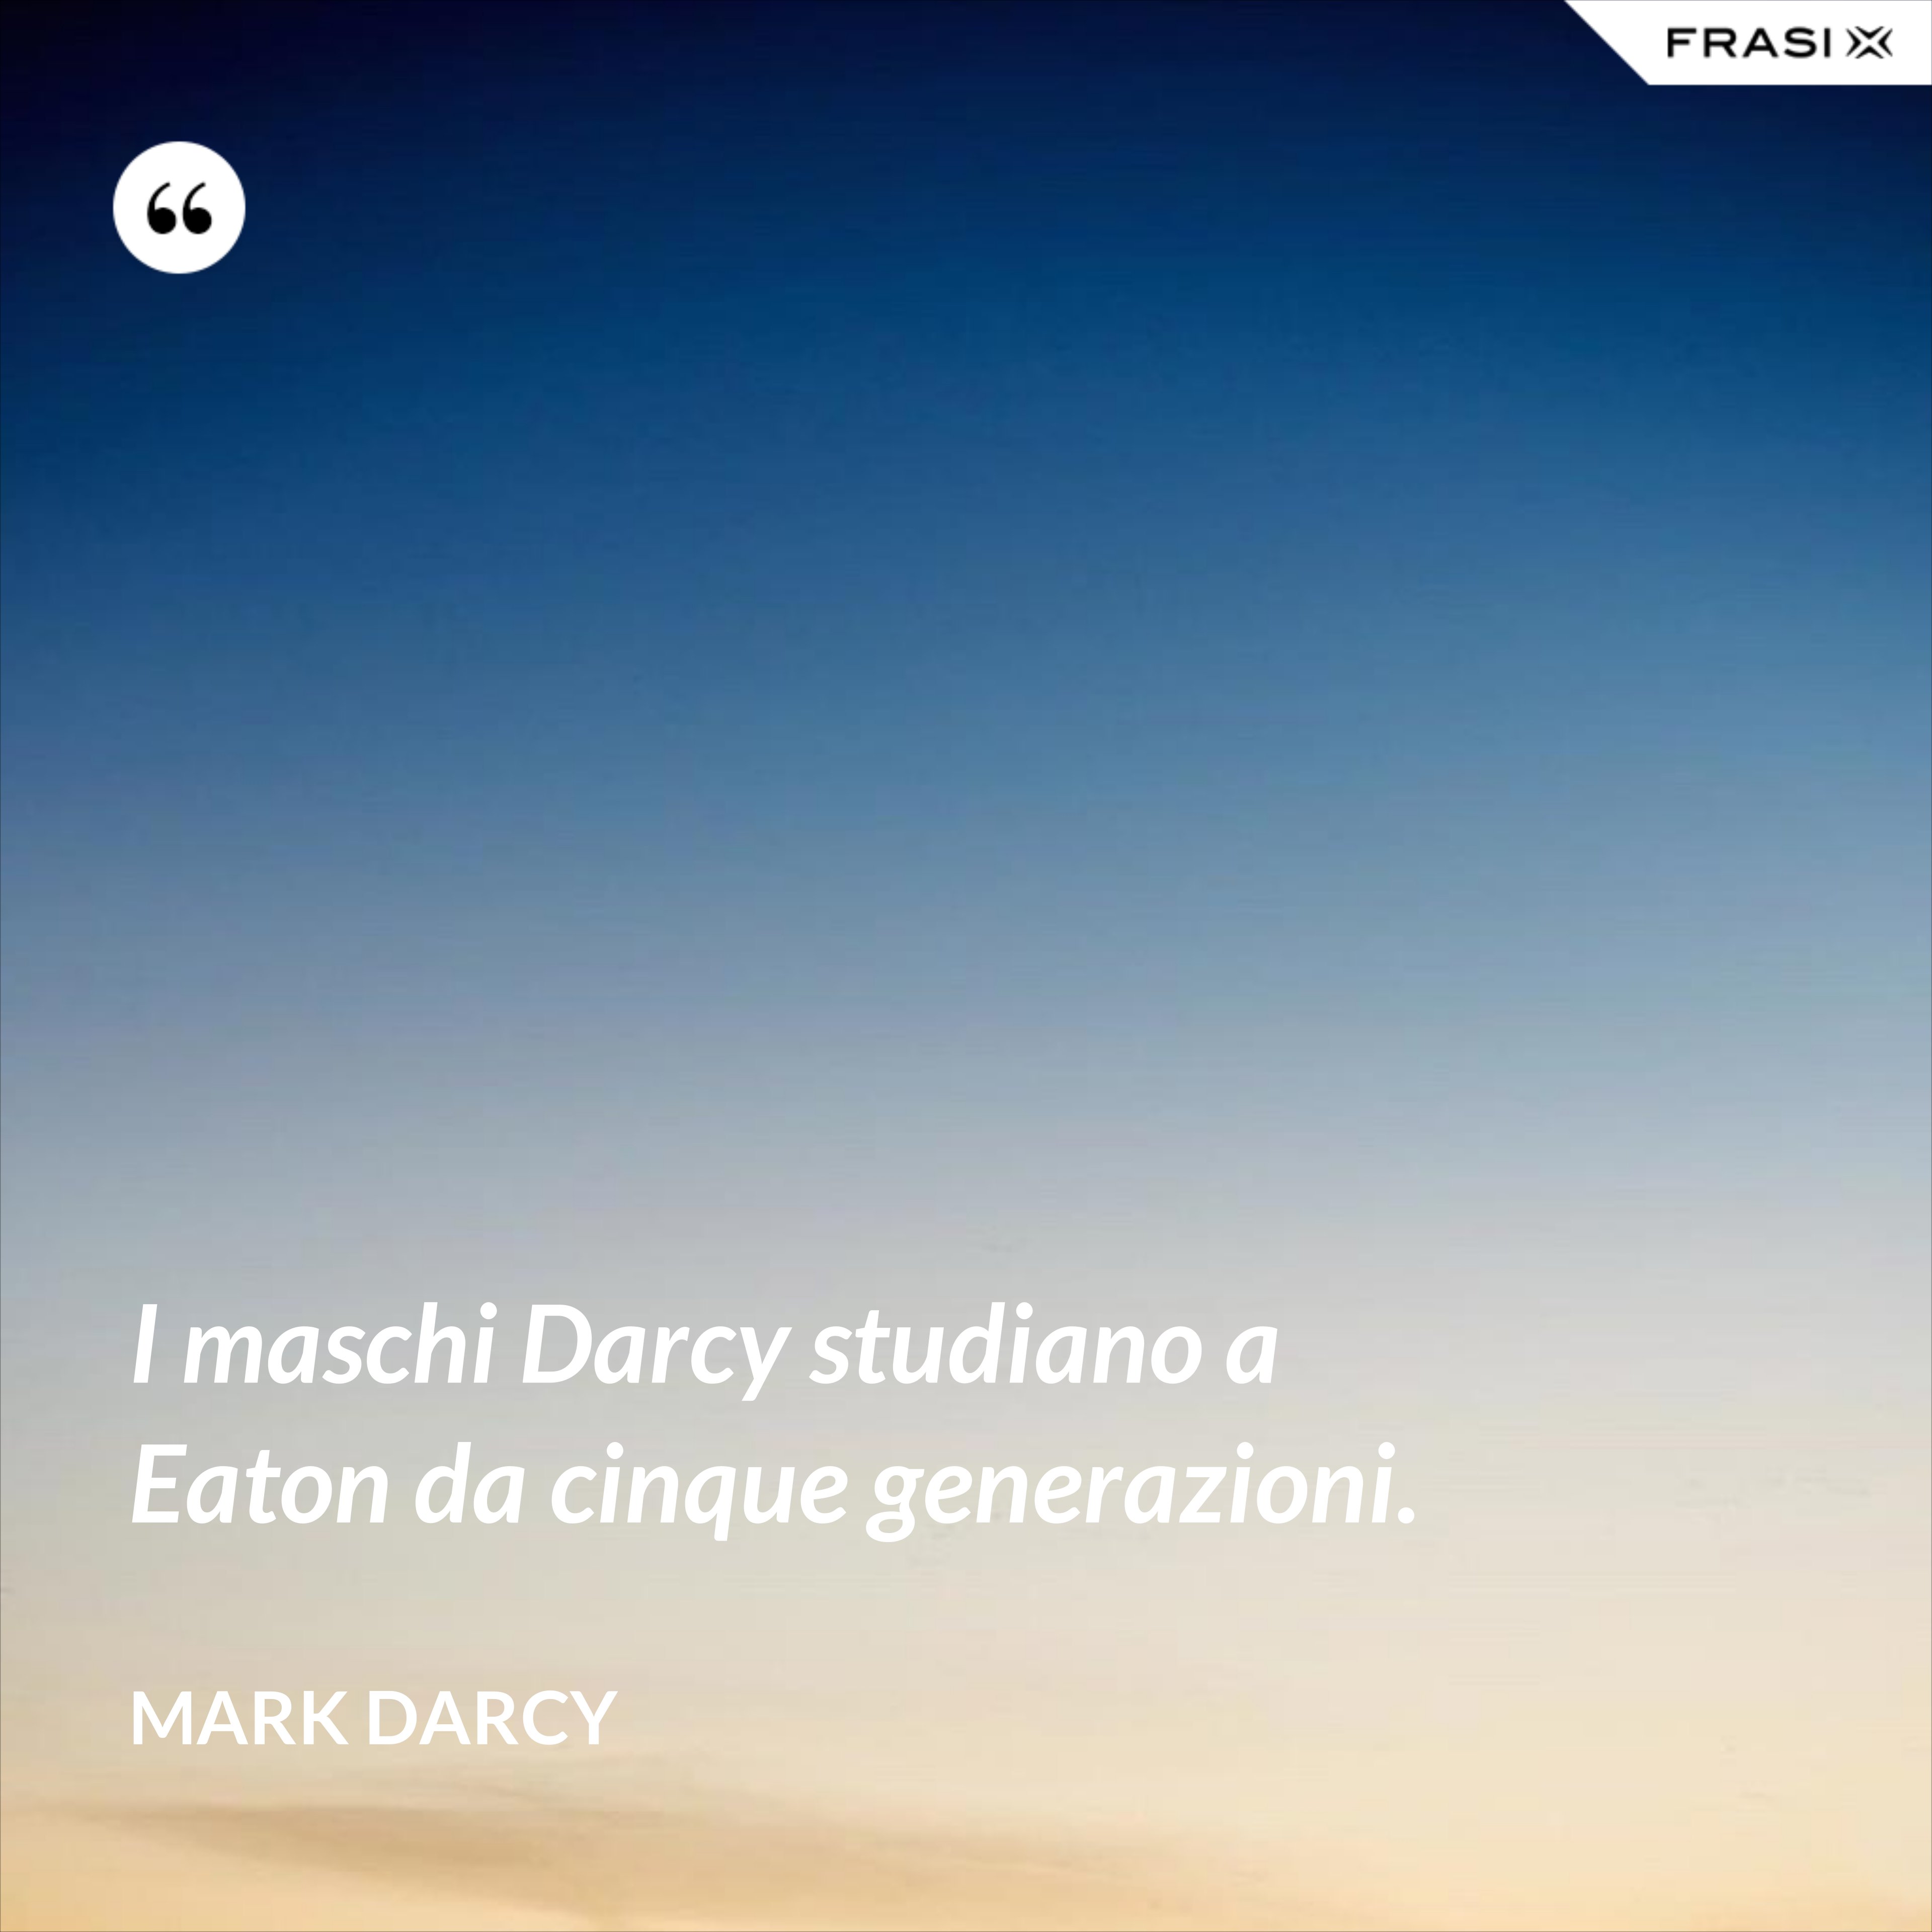 I maschi Darcy studiano a Eaton da cinque generazioni. - Mark Darcy